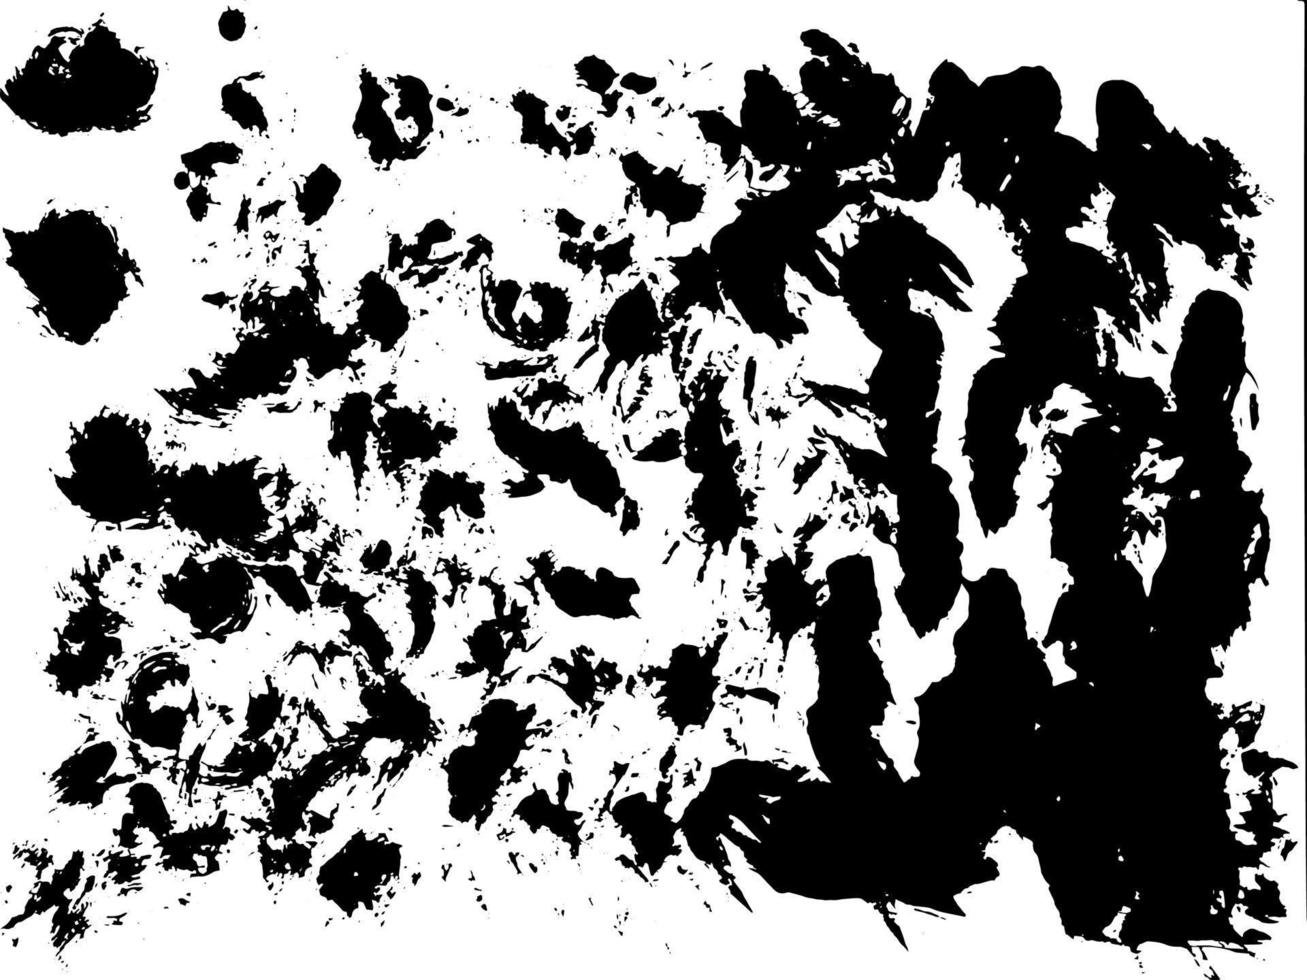 modello di struttura urbana di grunge bianco e nero. sfondo di angoscia di sovrapposizione di polvere sporca scura. creare facilmente un effetto vintage punteggiato, graffiato e astratto con rumore e grana vettore